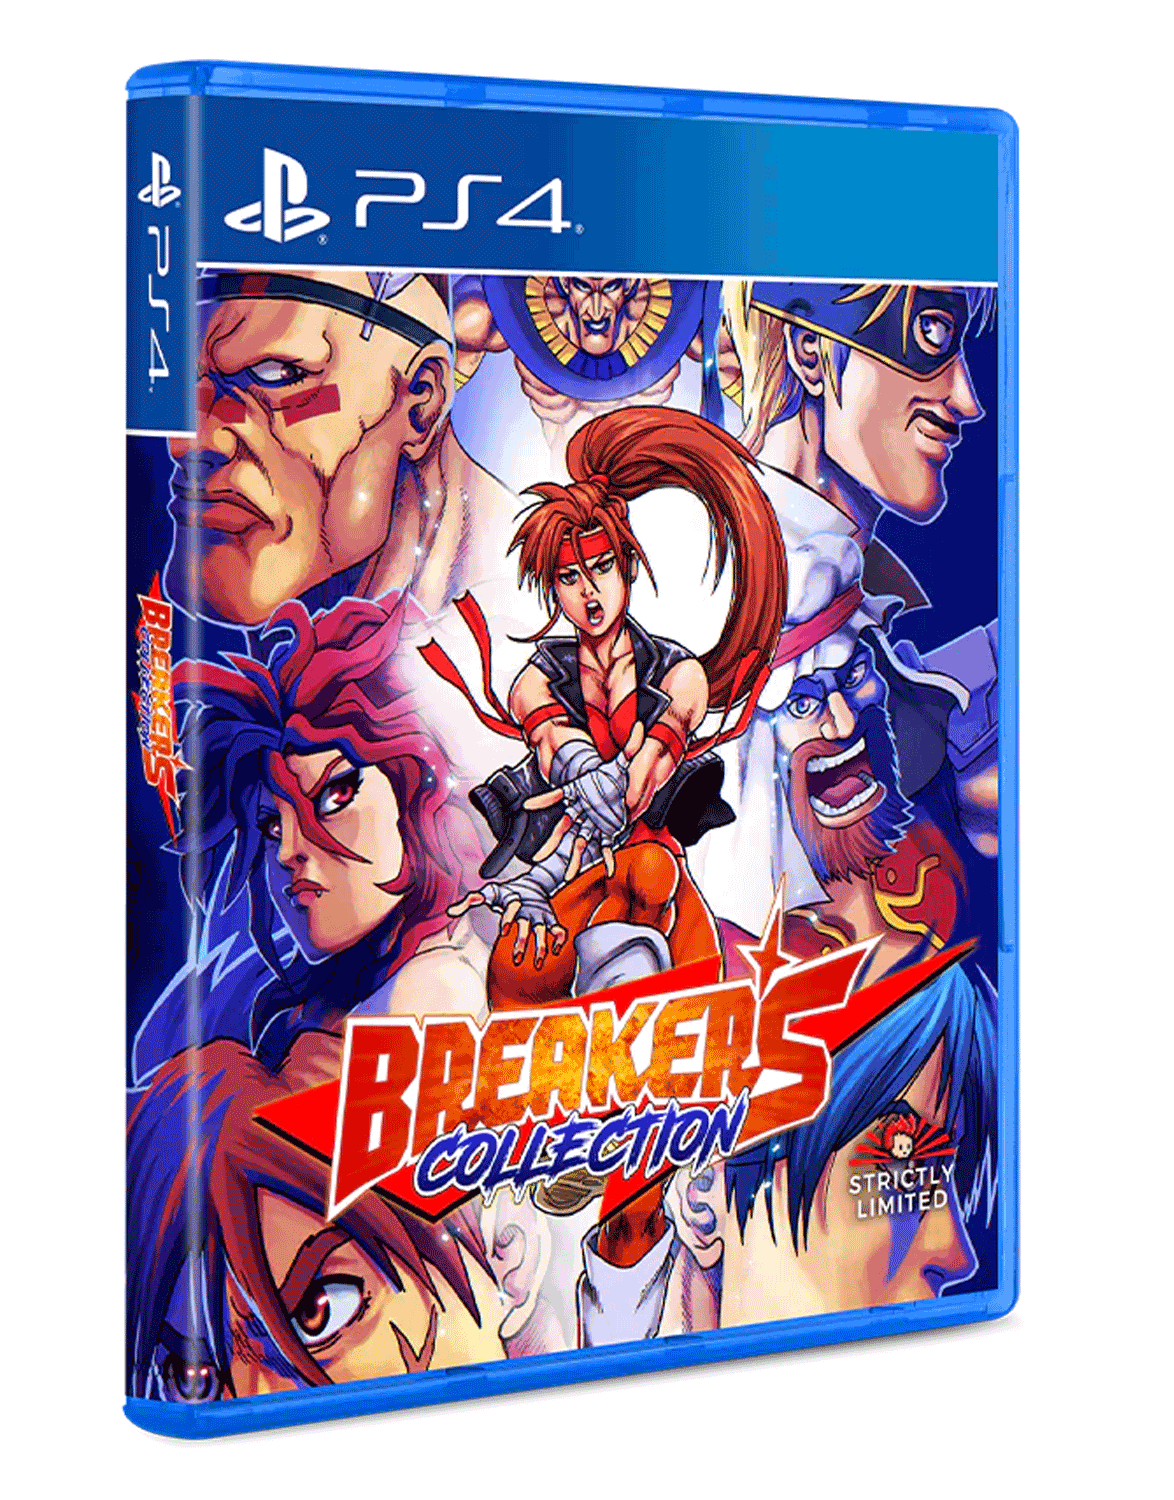 Игра Breakers Collection (PlayStation 4, полностью на иностранном языке)